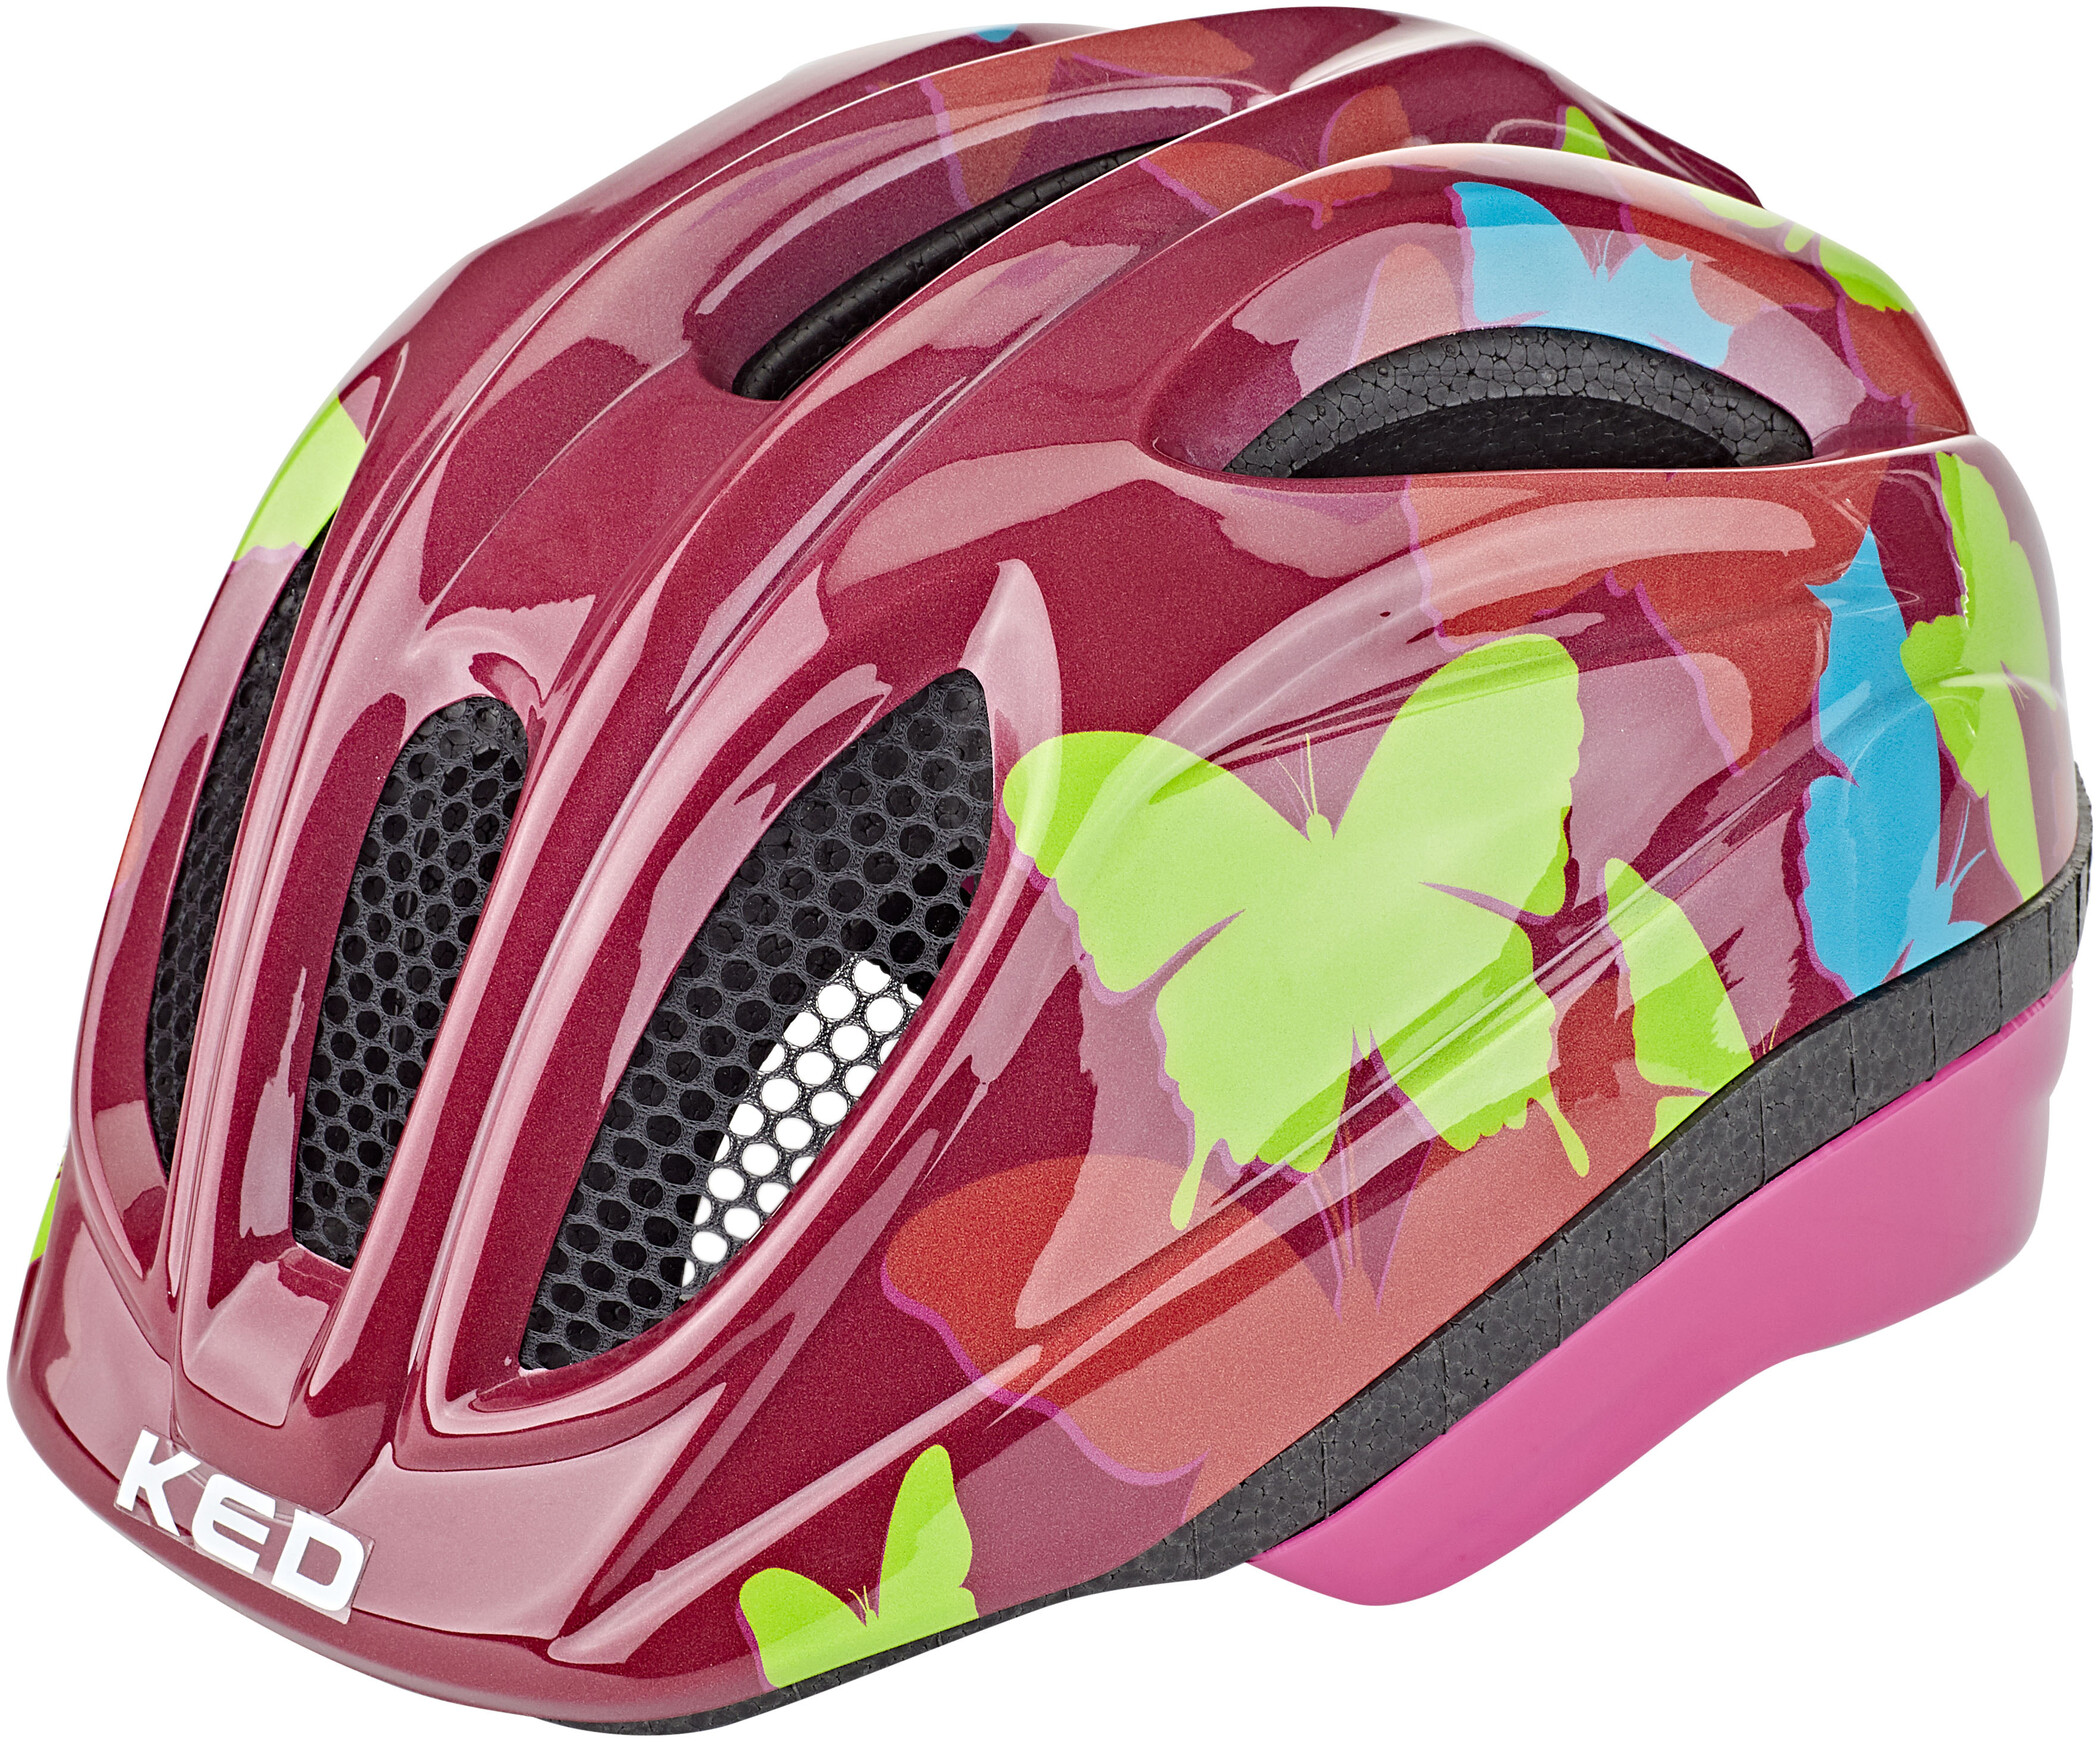 Details about   Kinder Helm Fahrradhelm Schutzhelm Jungen Mädchen Kinderhelm Kids Safety Helmet 